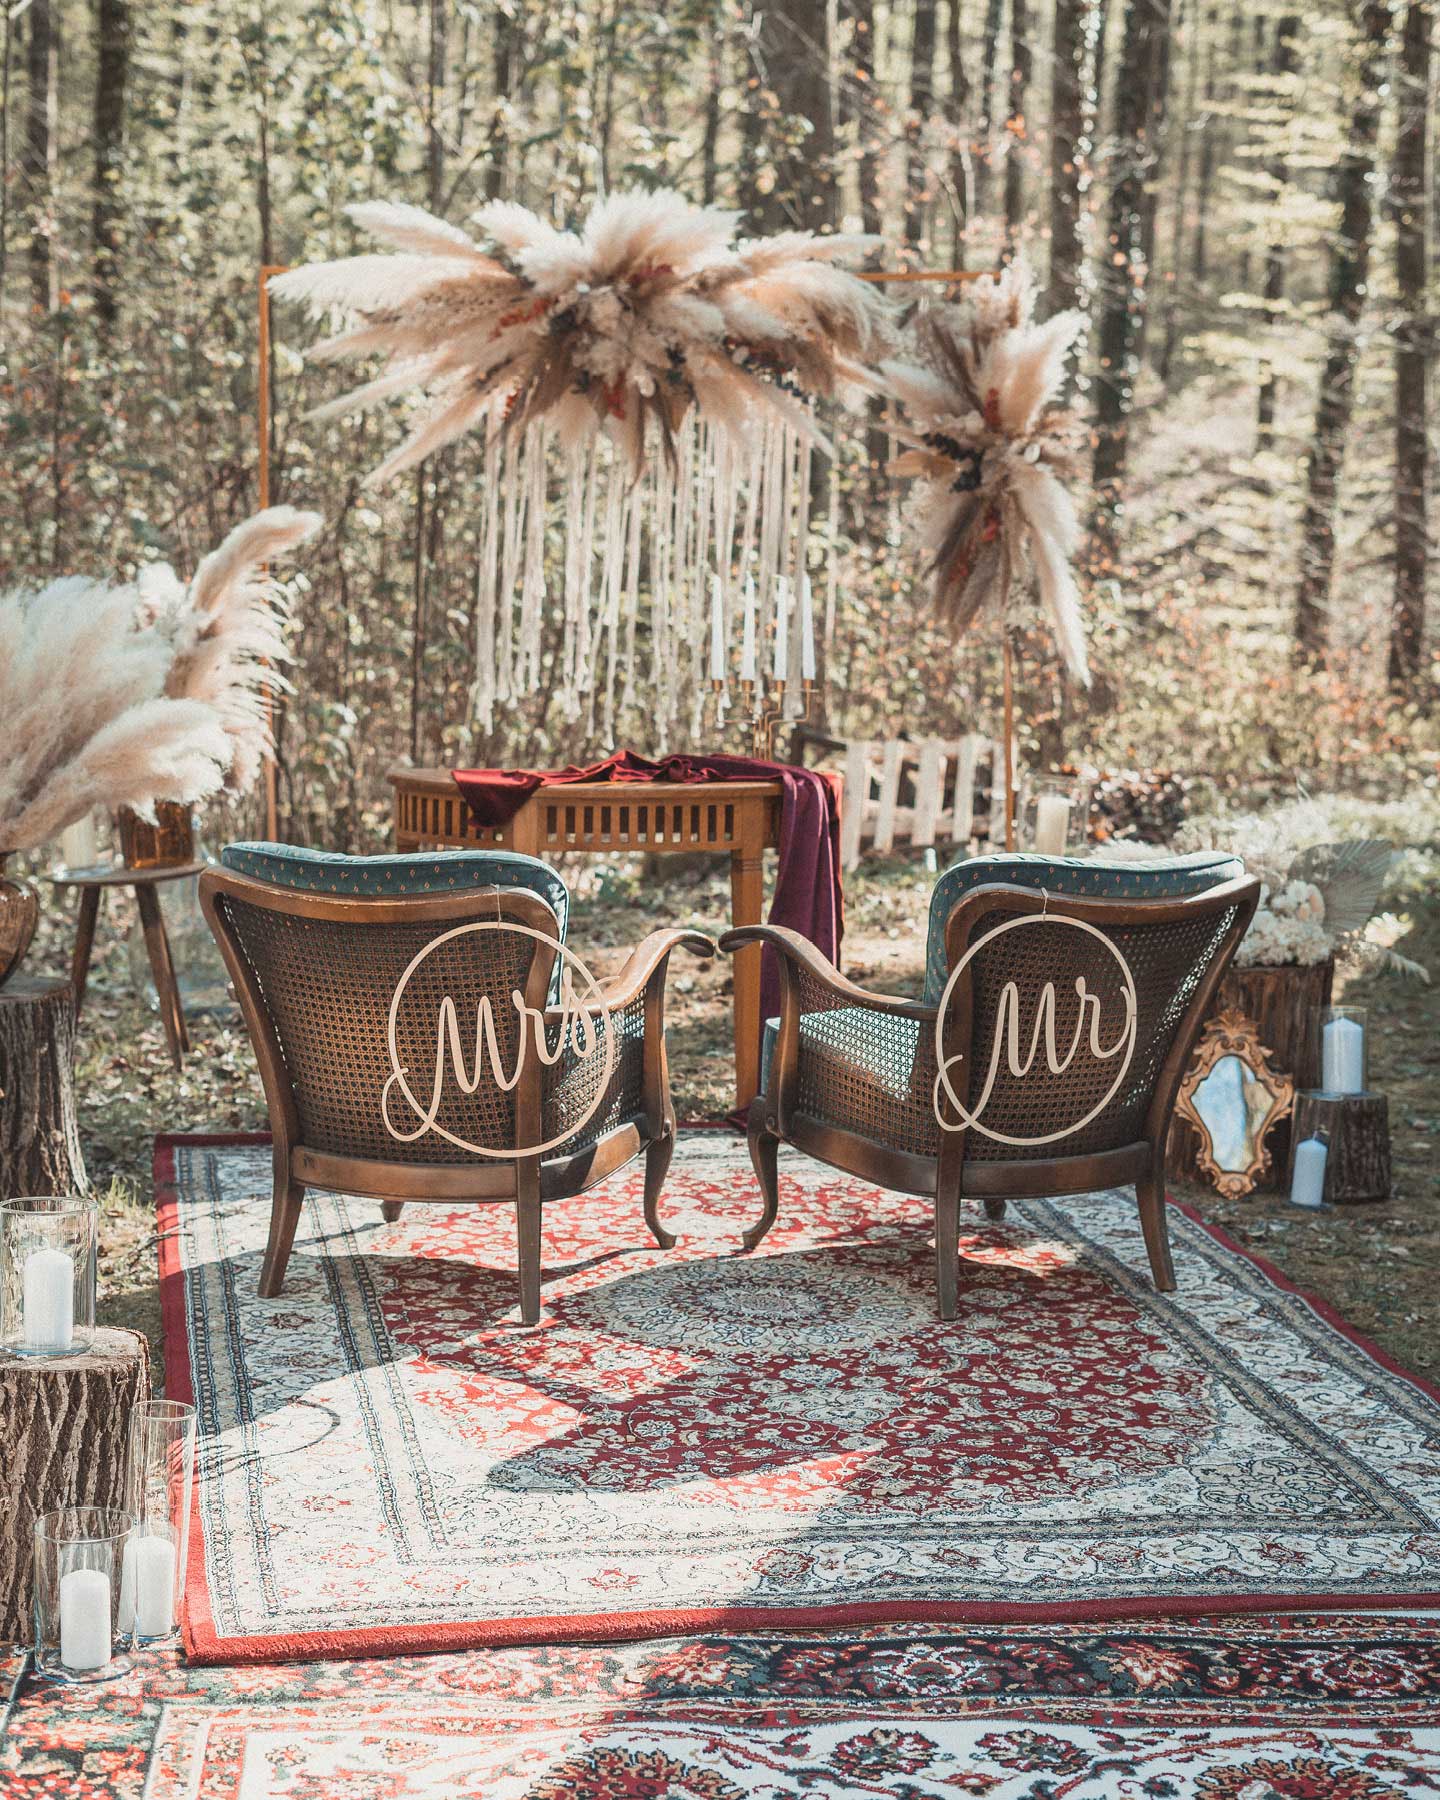 Vintage Teppiche im Wald & gemütliche Retro Sessel als Rahmen für die freie Trauung im Wald.